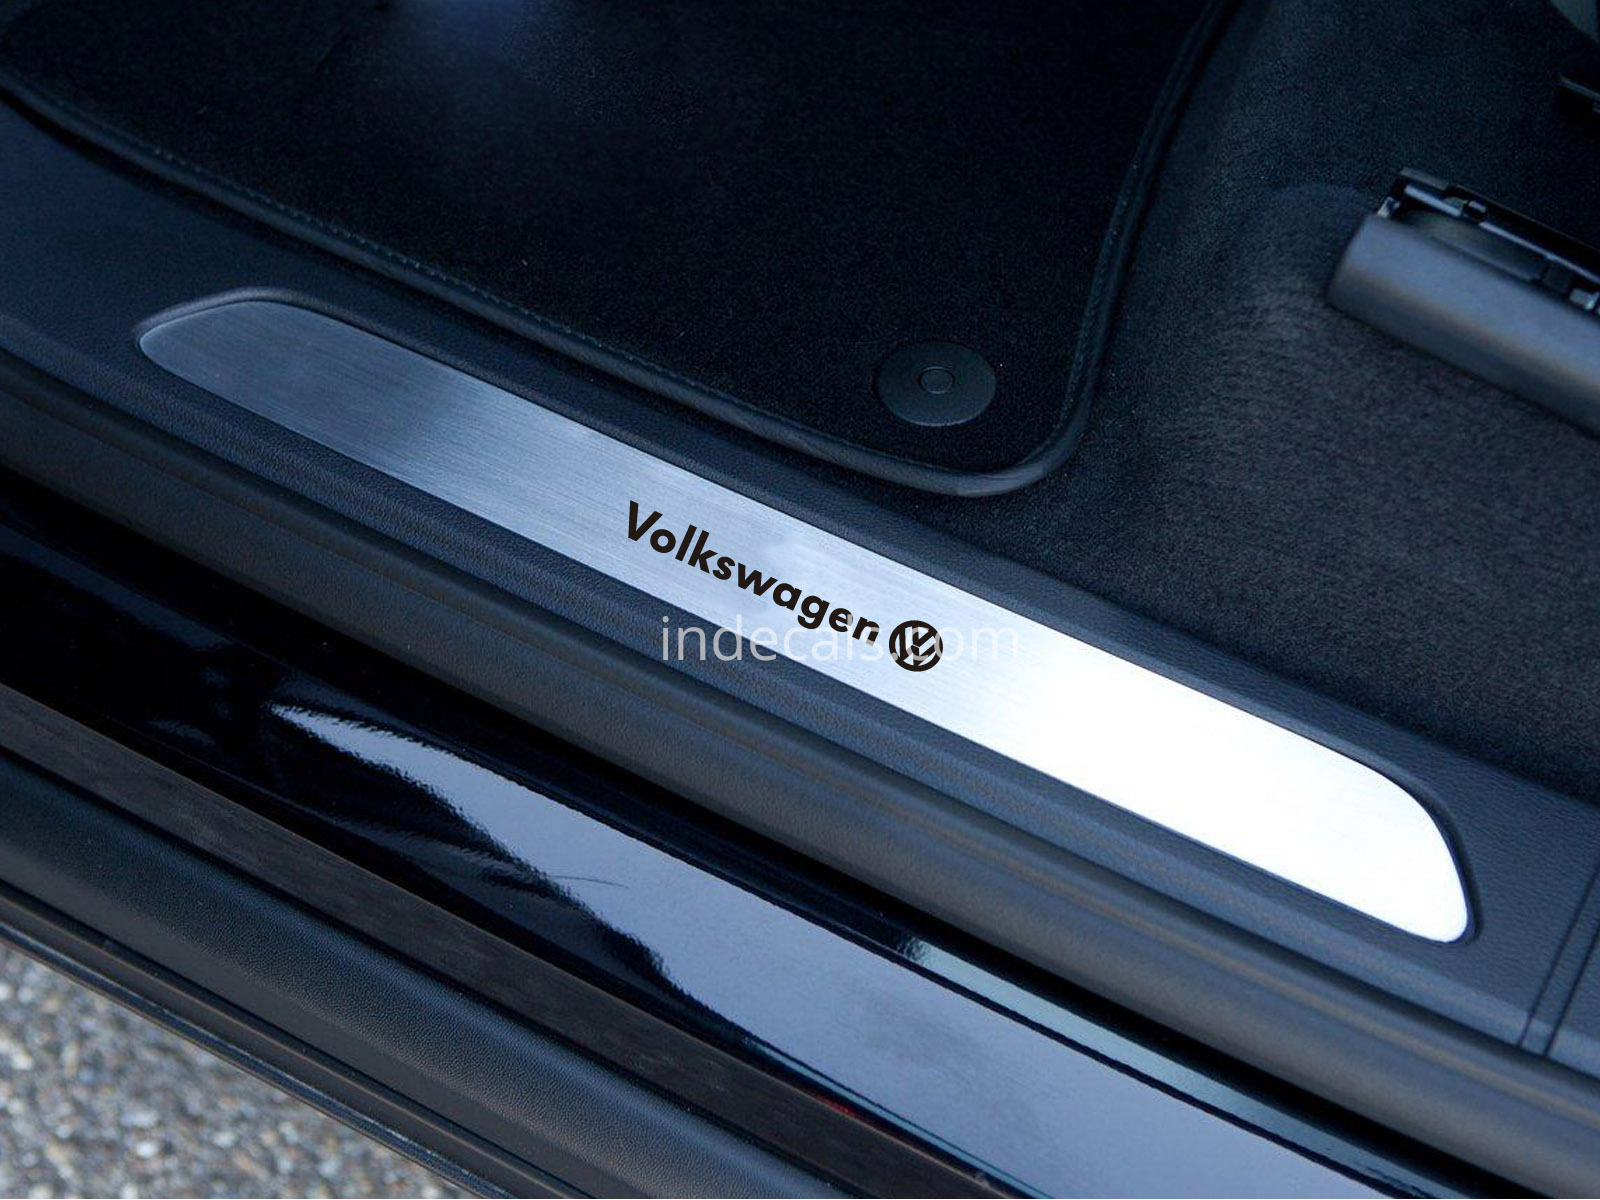 6 x Volkswagen Stickers for Door Sills - Black